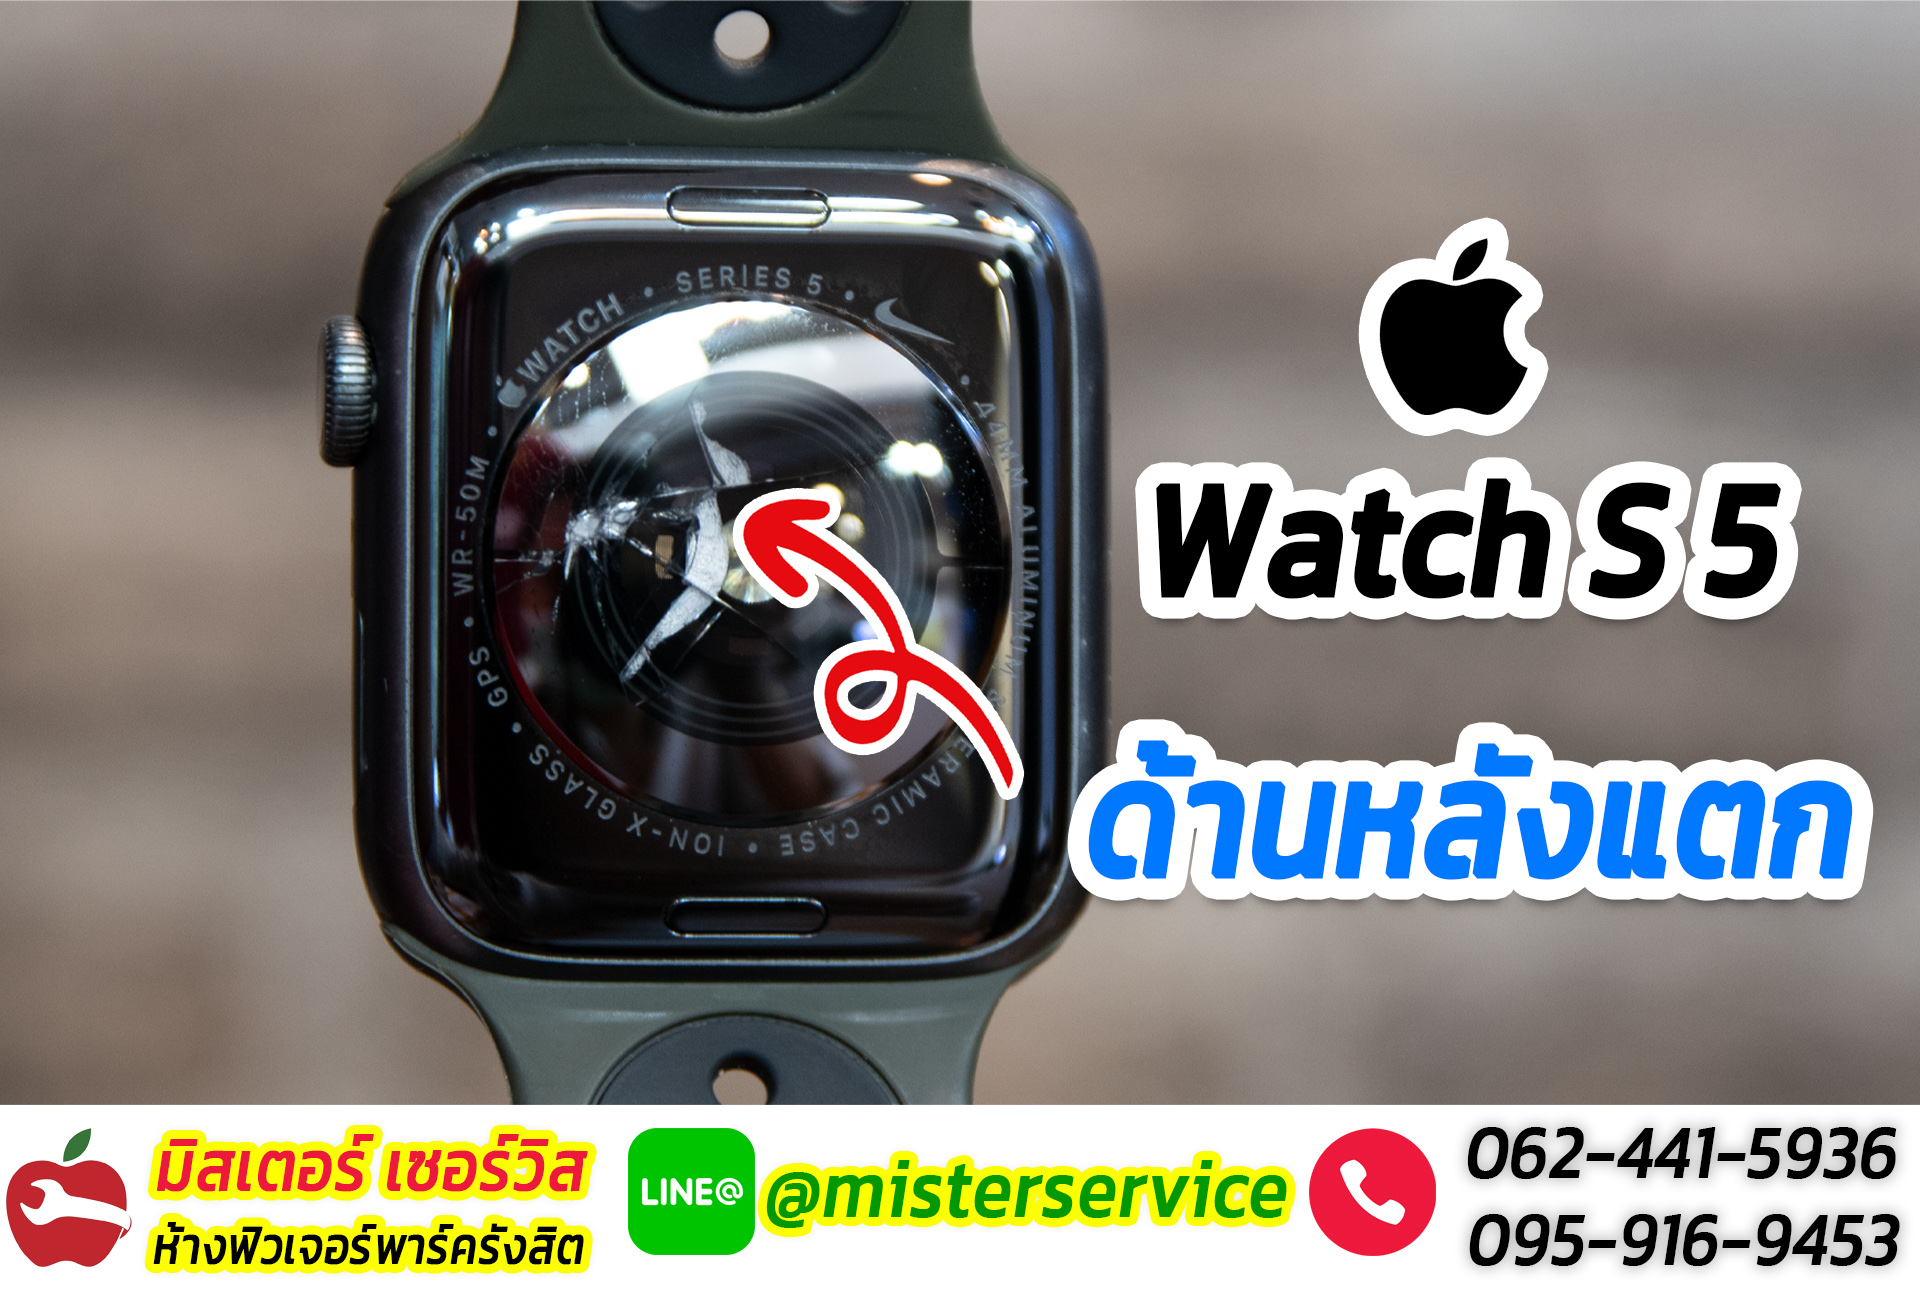 ซ่อม Apple Watch มหาสารคาม